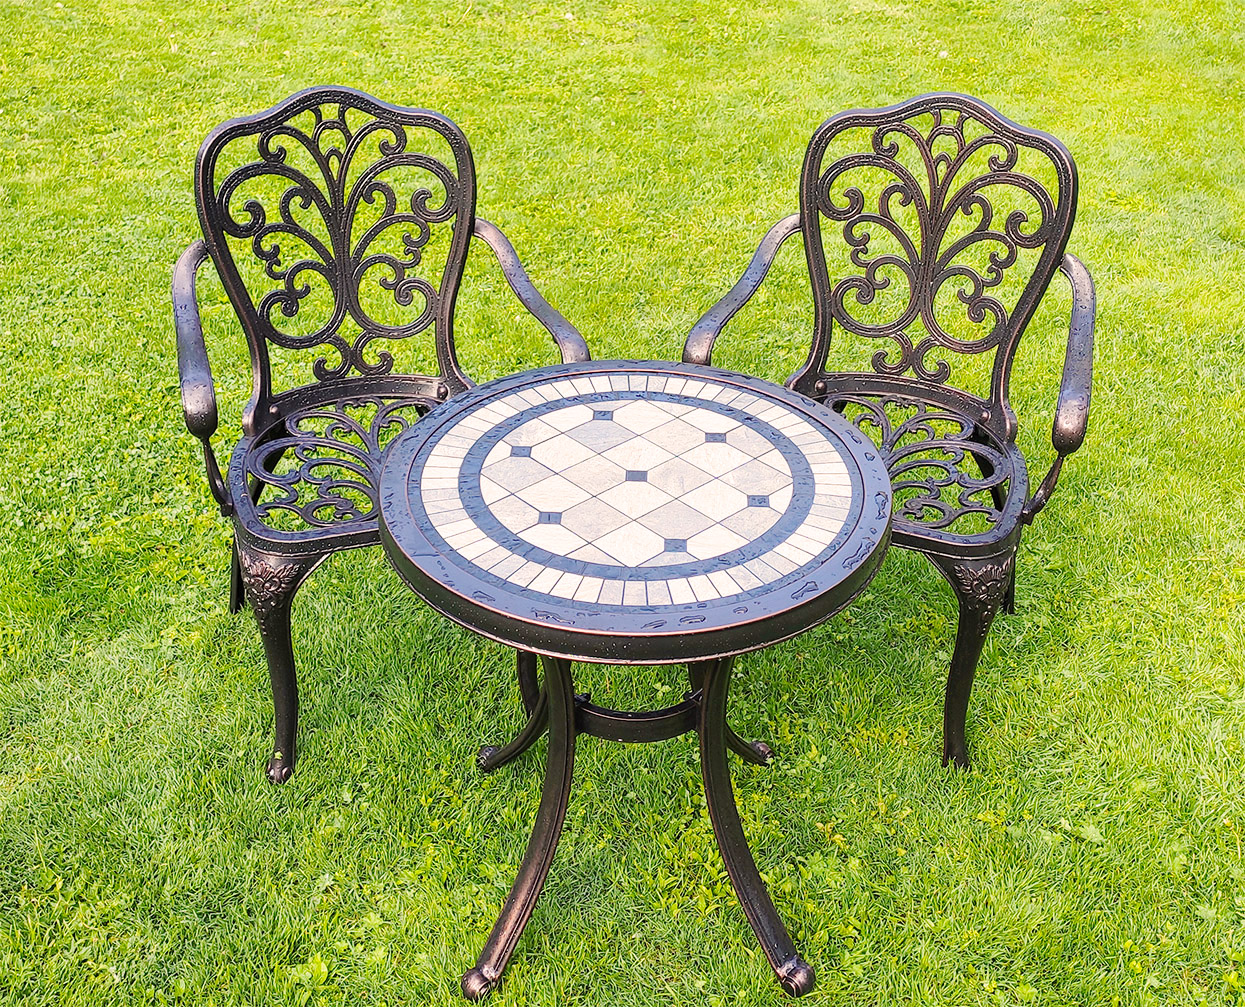 Комплект садовой мебели для дачи, чайный набор стол и стулья из металла, металлическая мебель патио, садовый стол с мозаикой, кованые стулья для сада, мебель для летних кафе, столы и стулья для улицы, ажурные кресла для сада